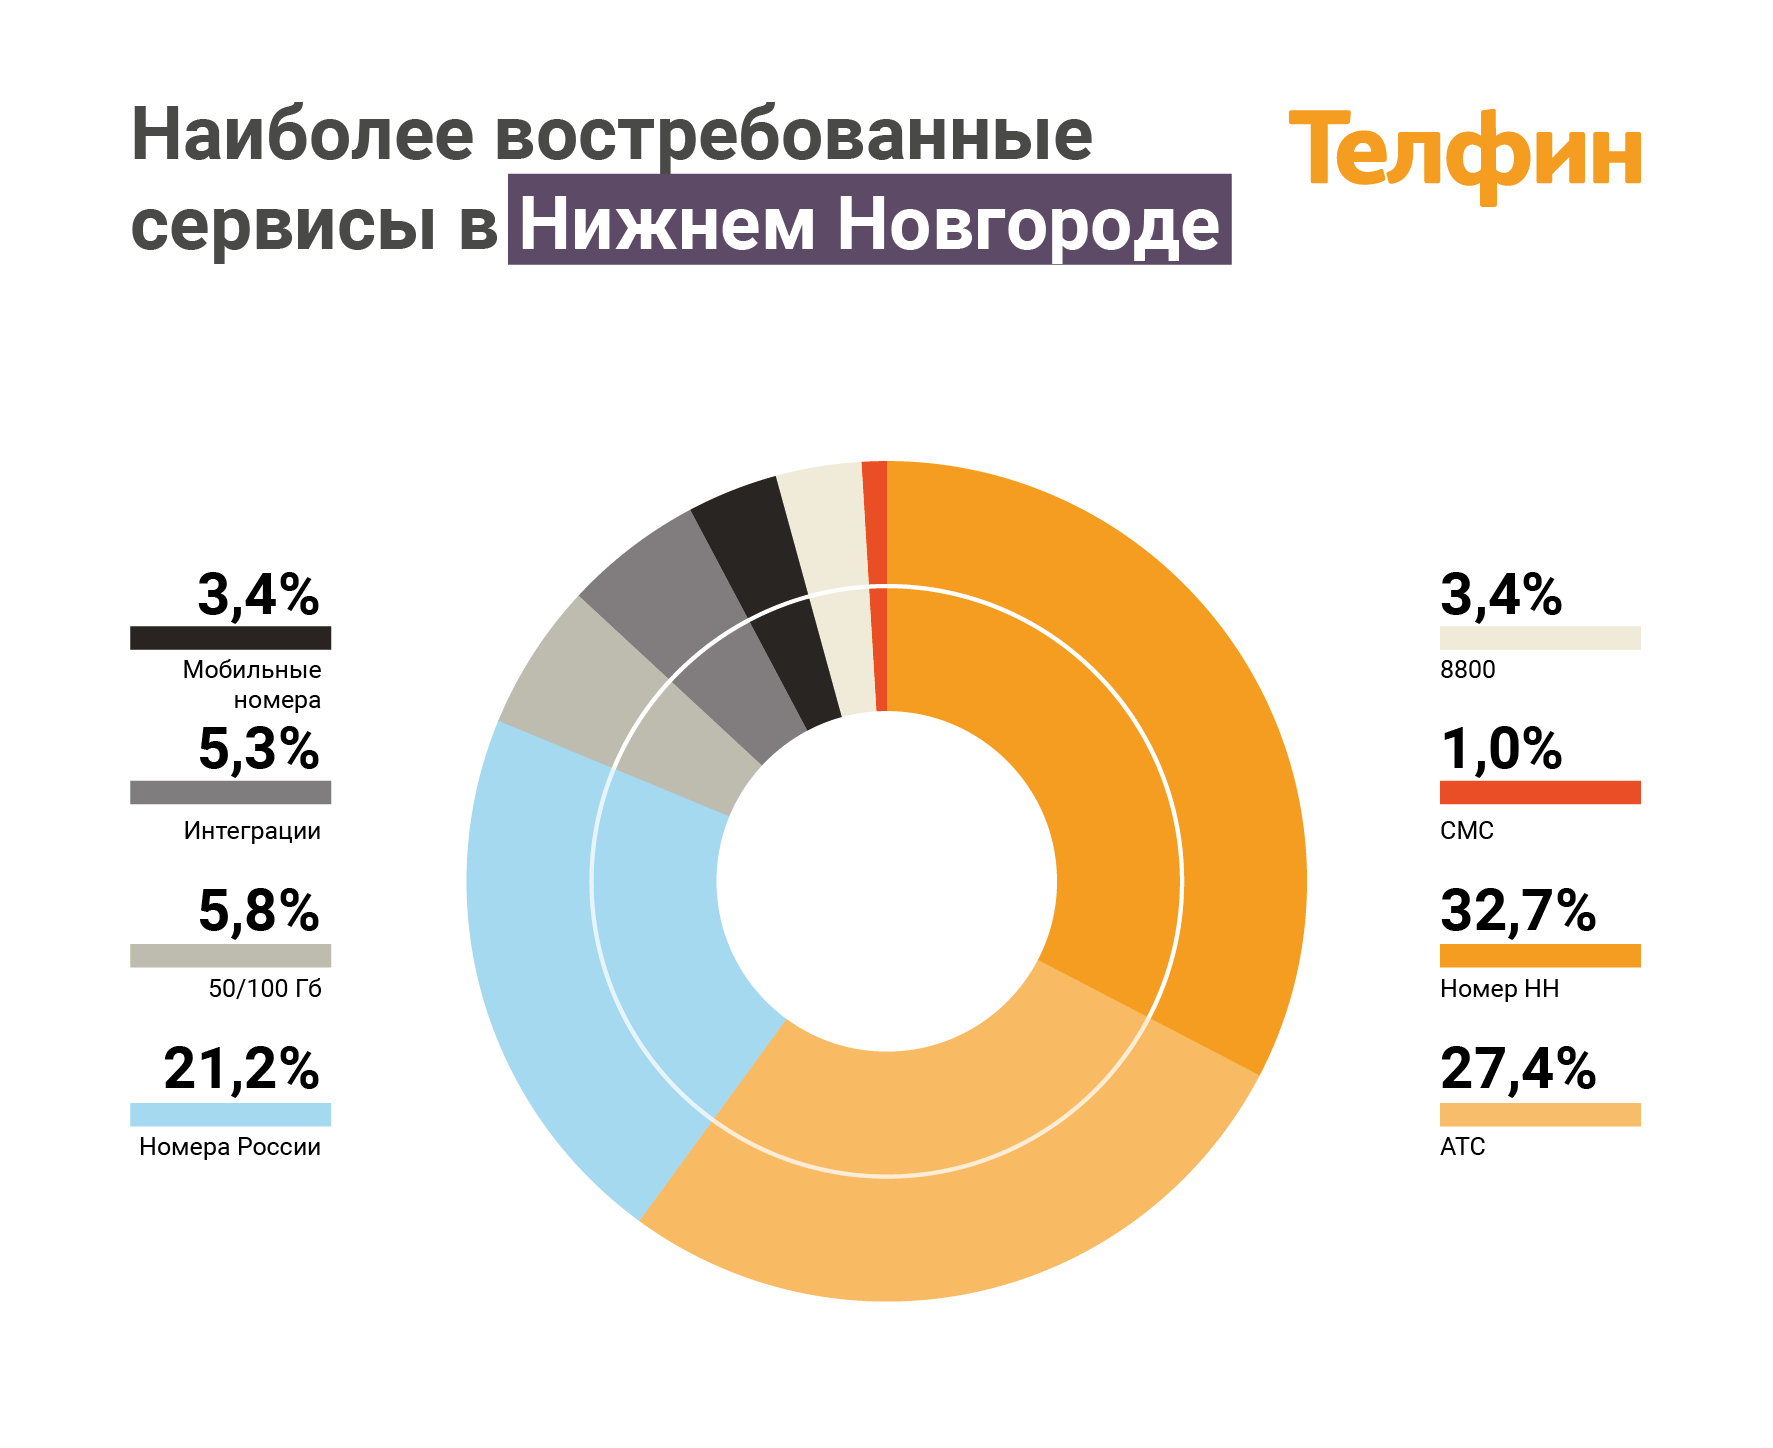 Наиболее востребованные сервисы ip-телефонии в Нижнем Новгороде